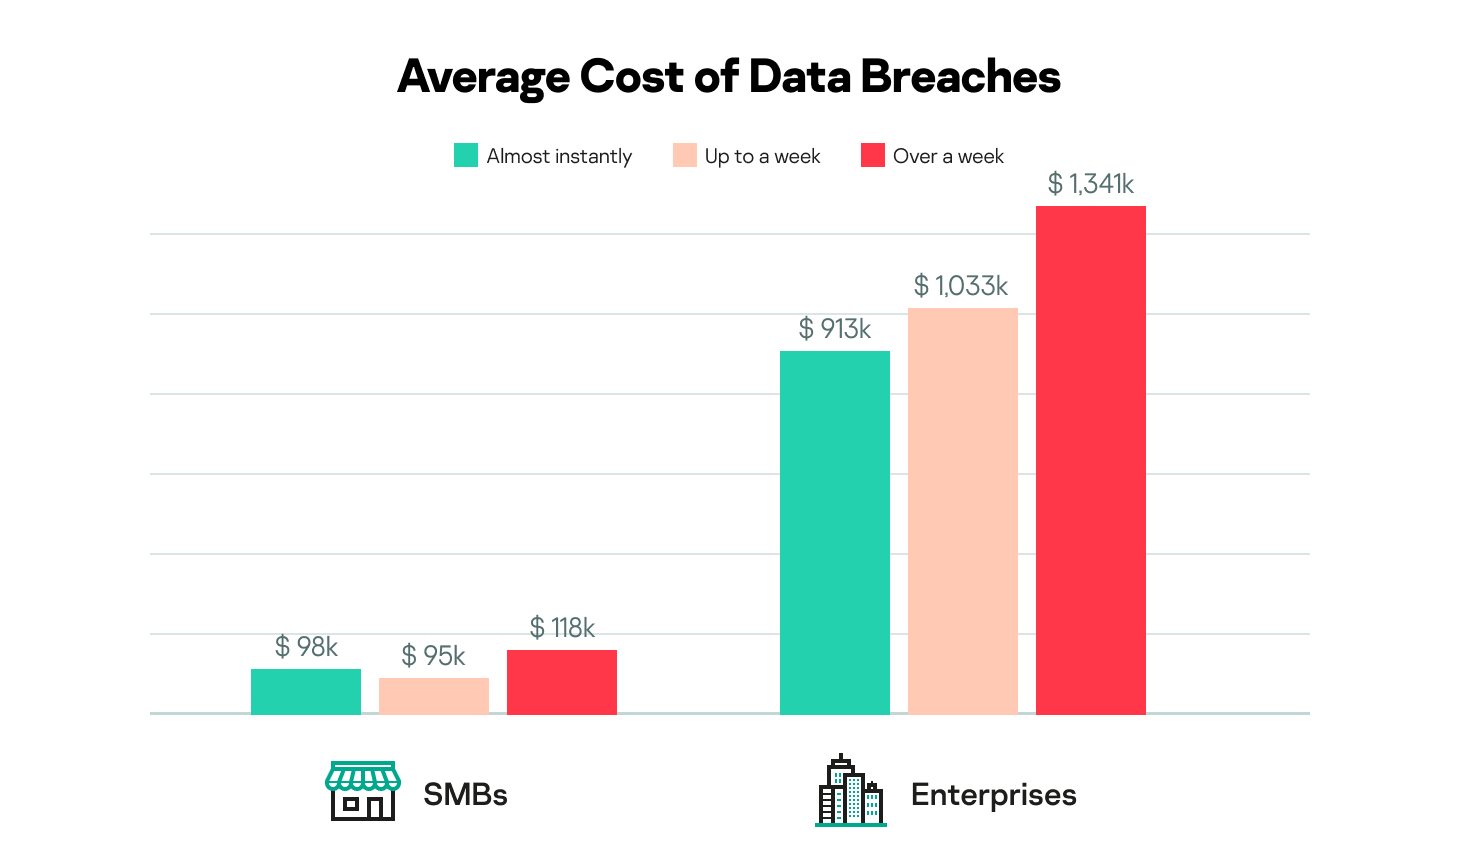 图形显示SMBs企业数据破解平均成本